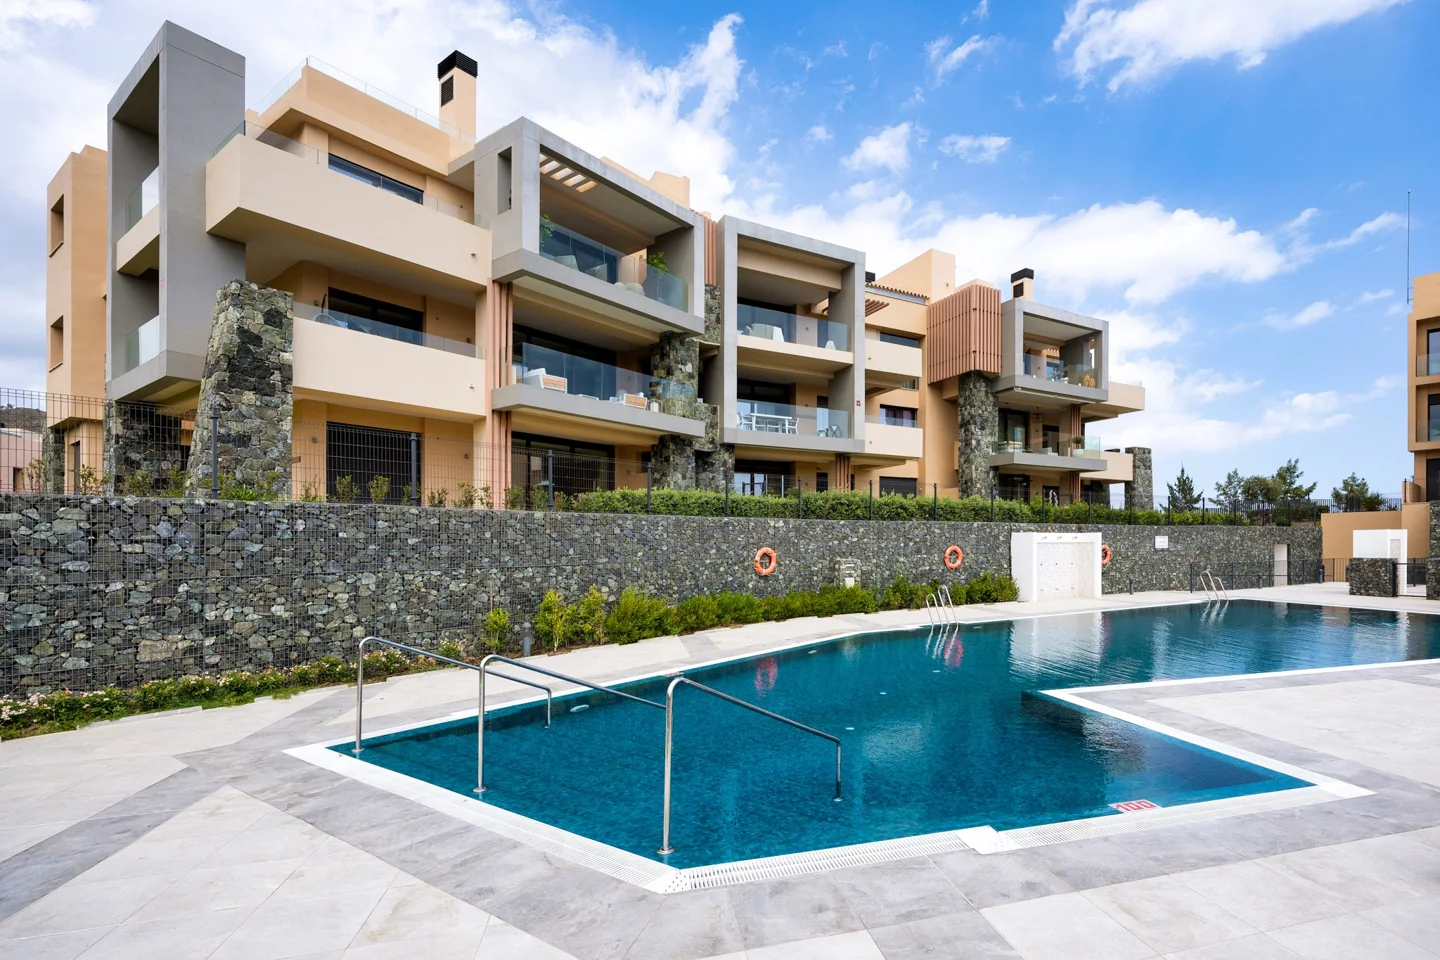 Apartamento contemporaneo en La Quinta con vistas panoramicas dentro de un resort con instalaciones de lujo